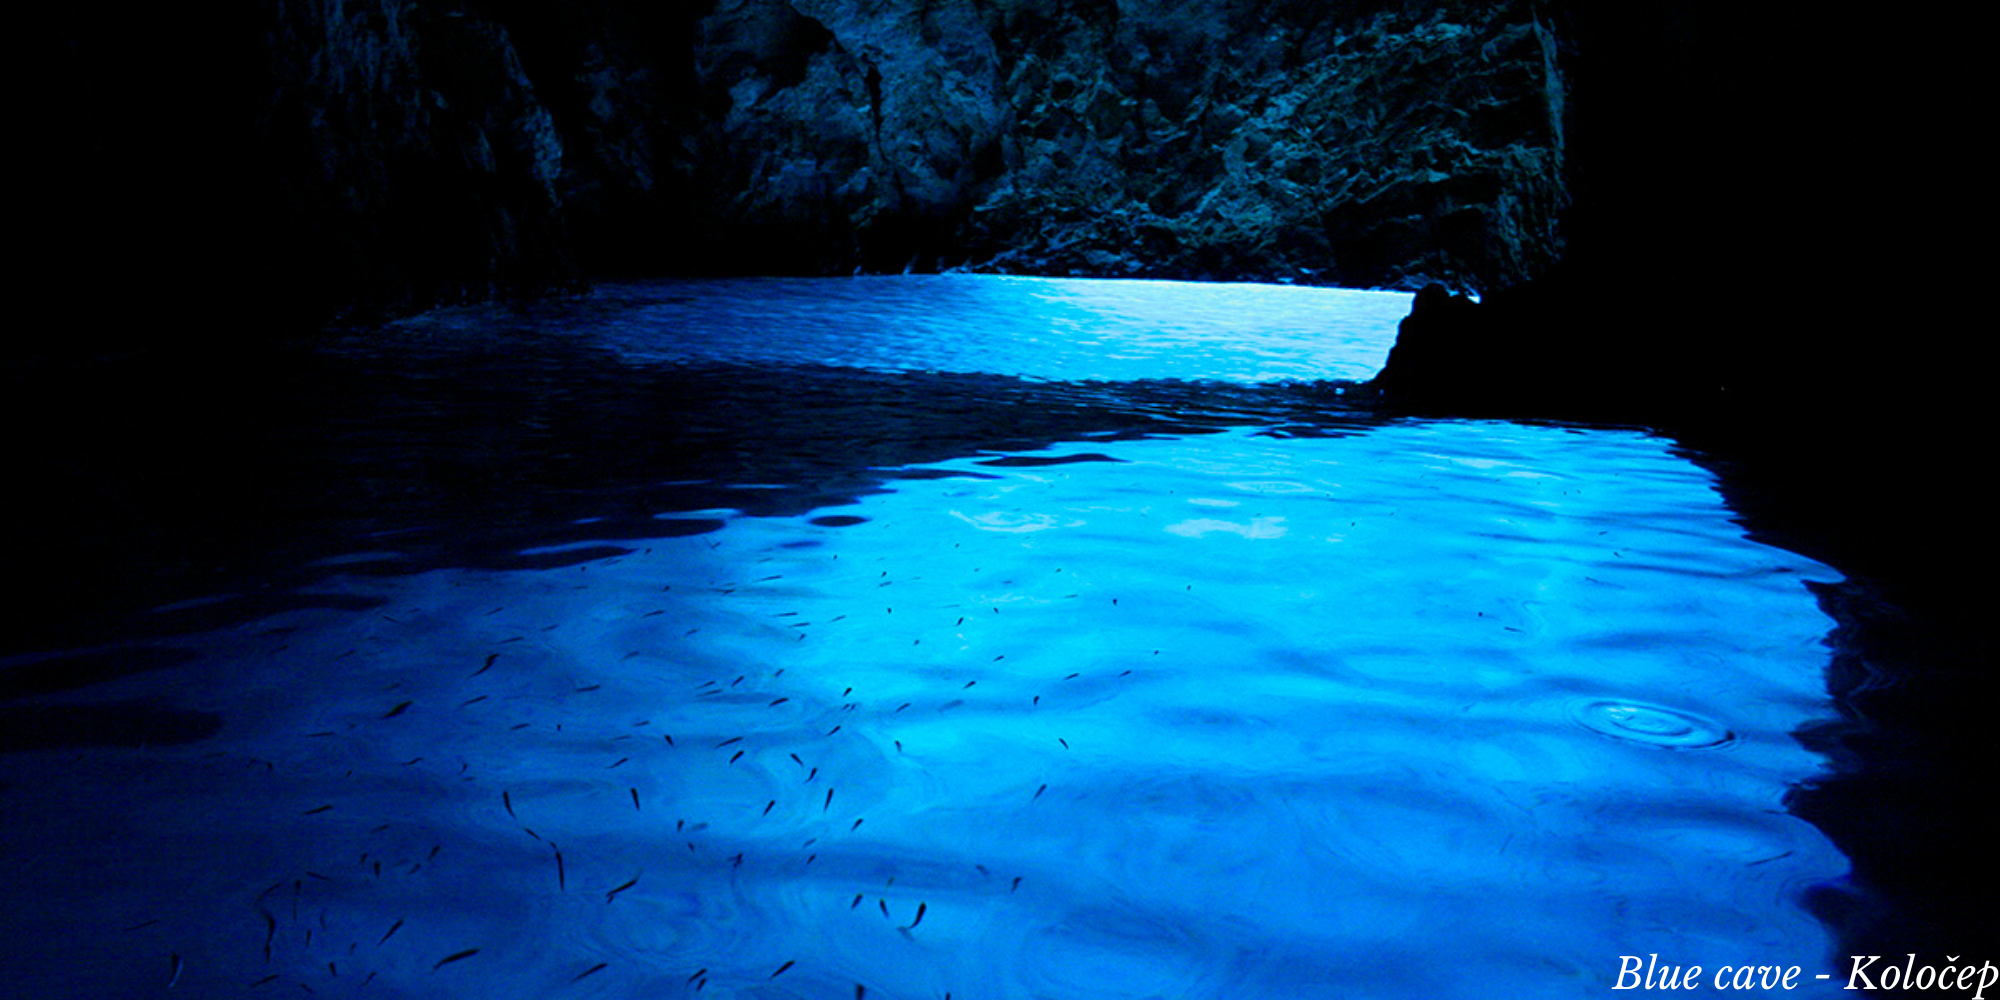 blue cave on kolocep island, blue cave dubrovnik, kolocep island, elaphite islands